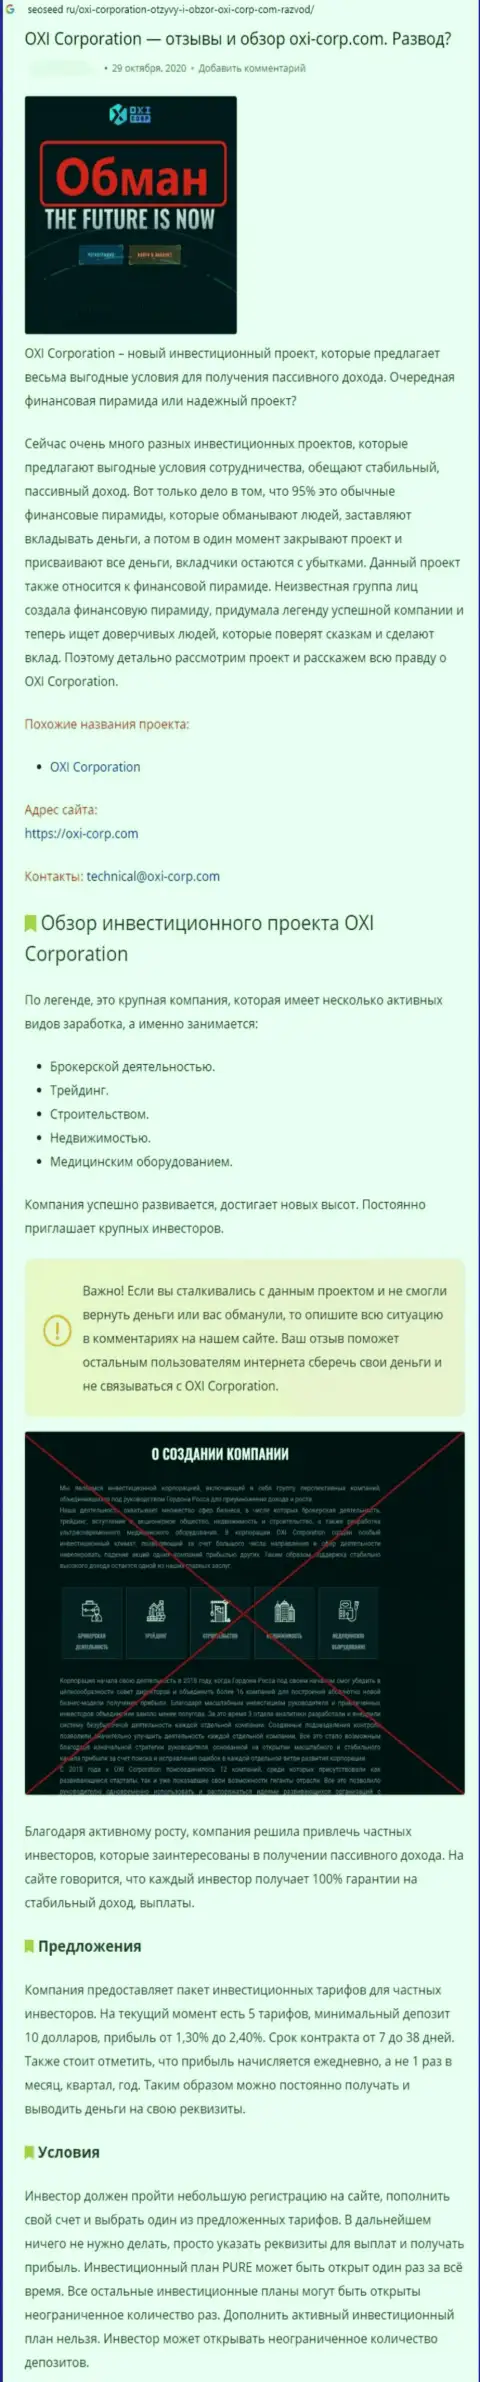 OXI Corporation - это МОШЕННИКИ !!! Условия сотрудничества, как ловушка для лохов - обзор деяний